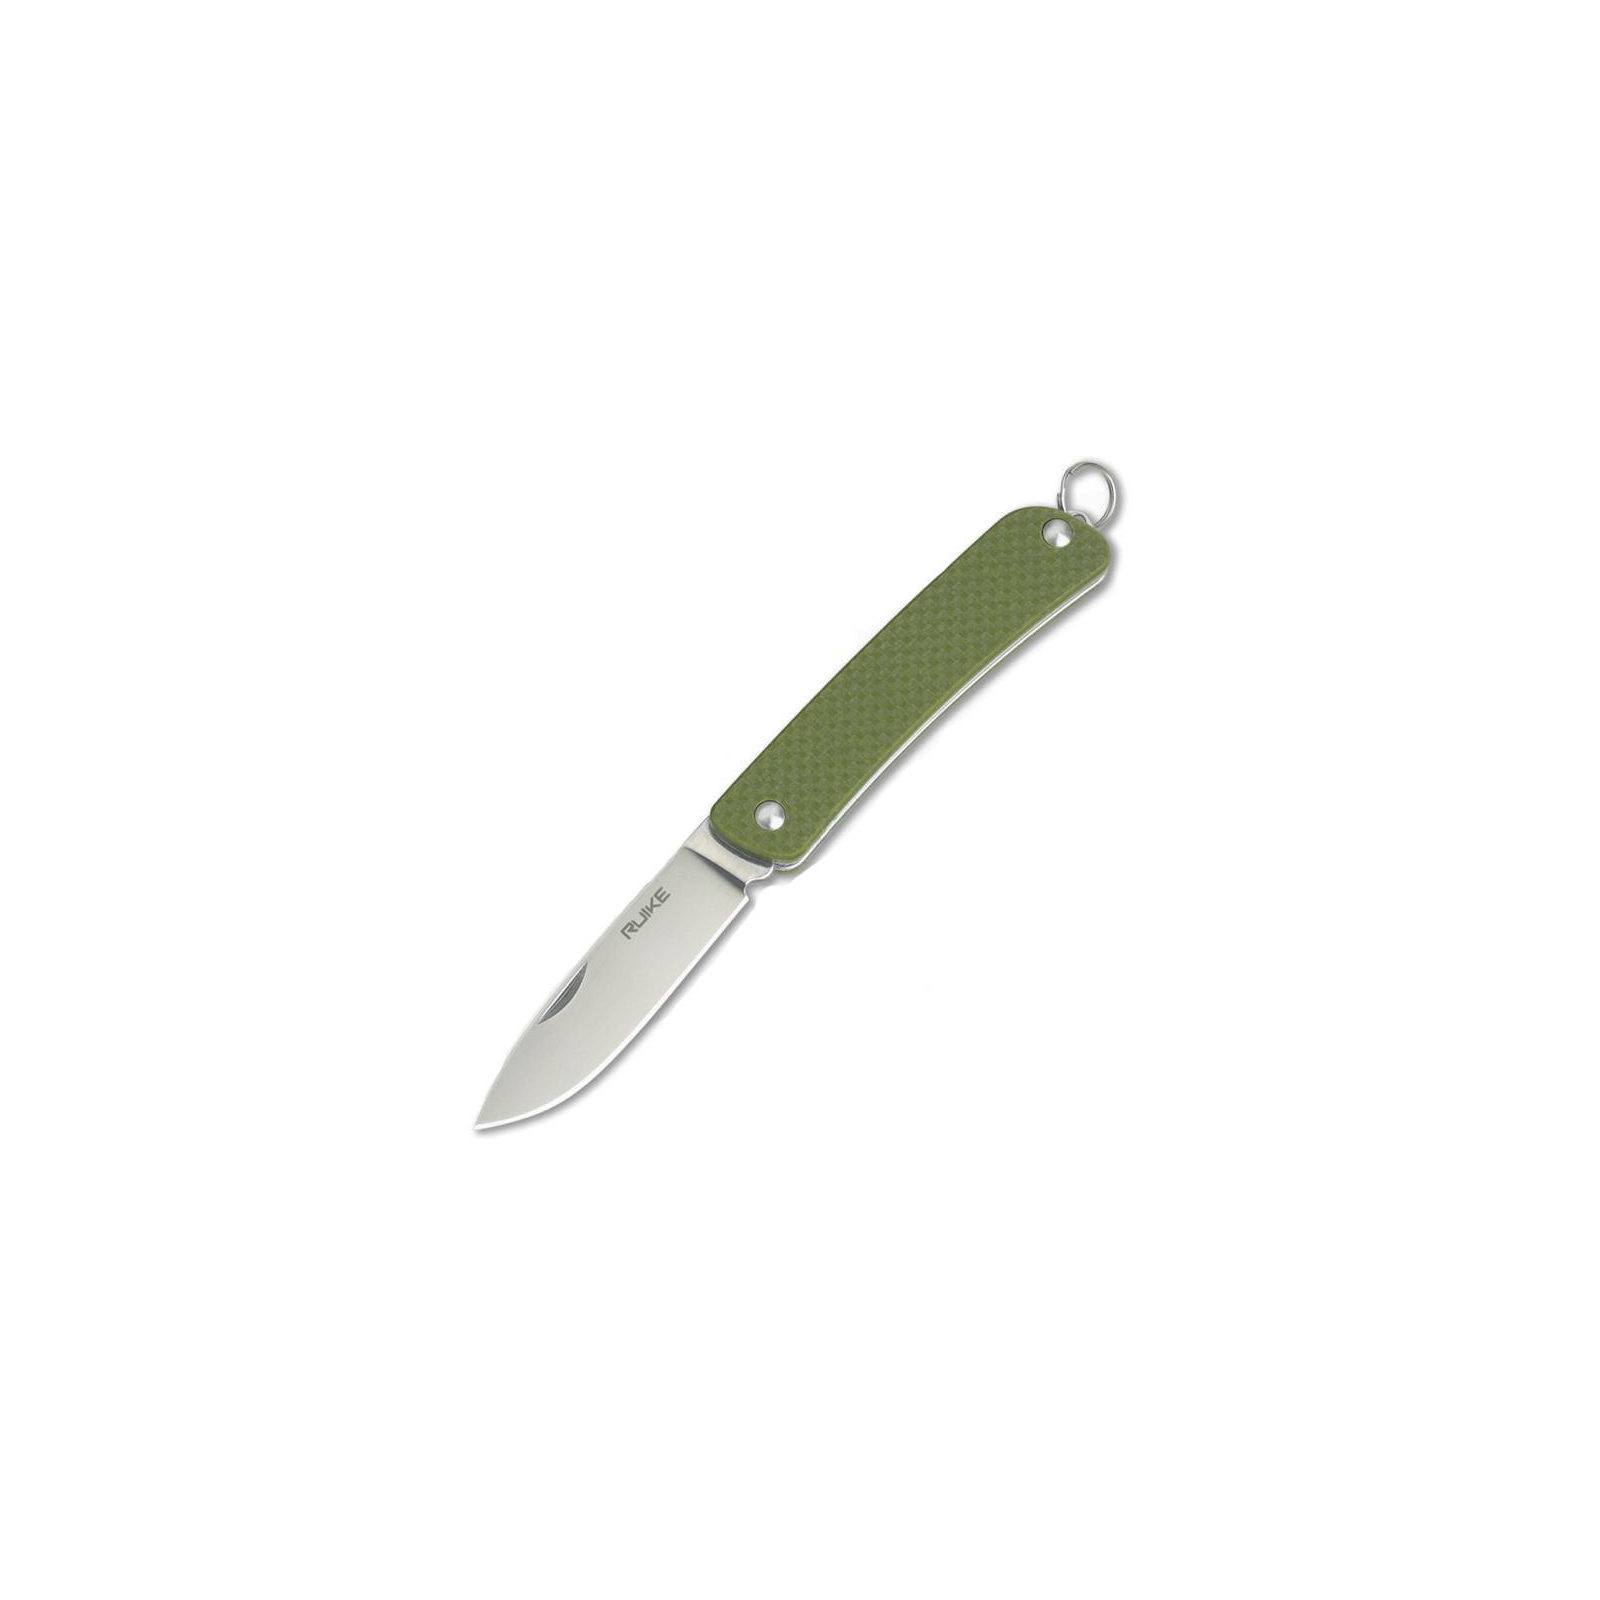 Нож Ruike S11-G